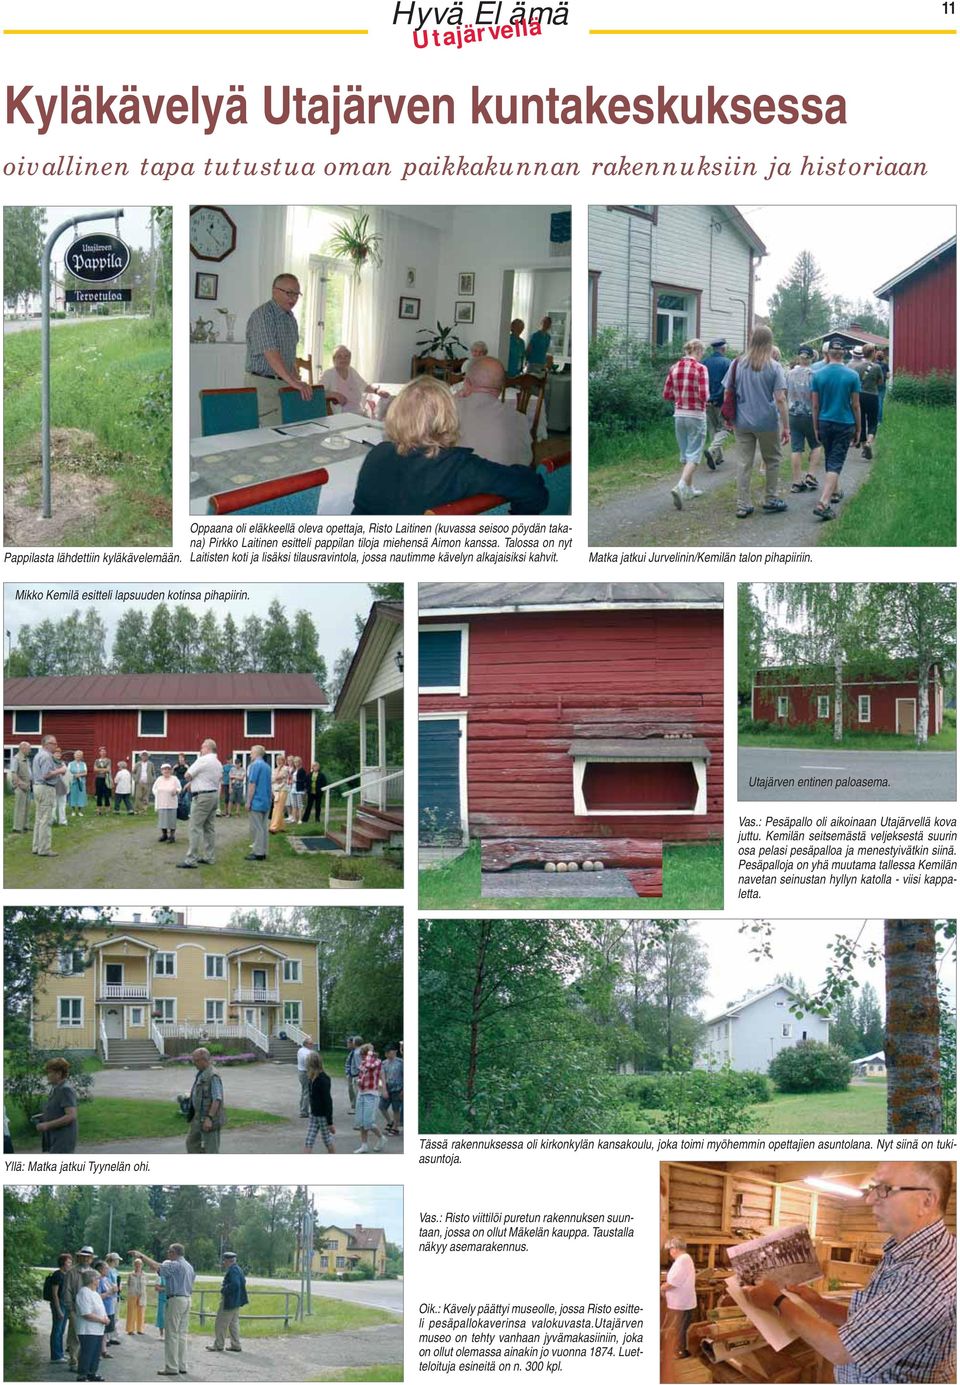 Talossa on nyt Laitisten koti ja lisäksi tilausravintola, jossa nautimme kävelyn alkajaisiksi kahvit. Matka jatkui Jurvelinin/Kemilän talon pihapiiriin.